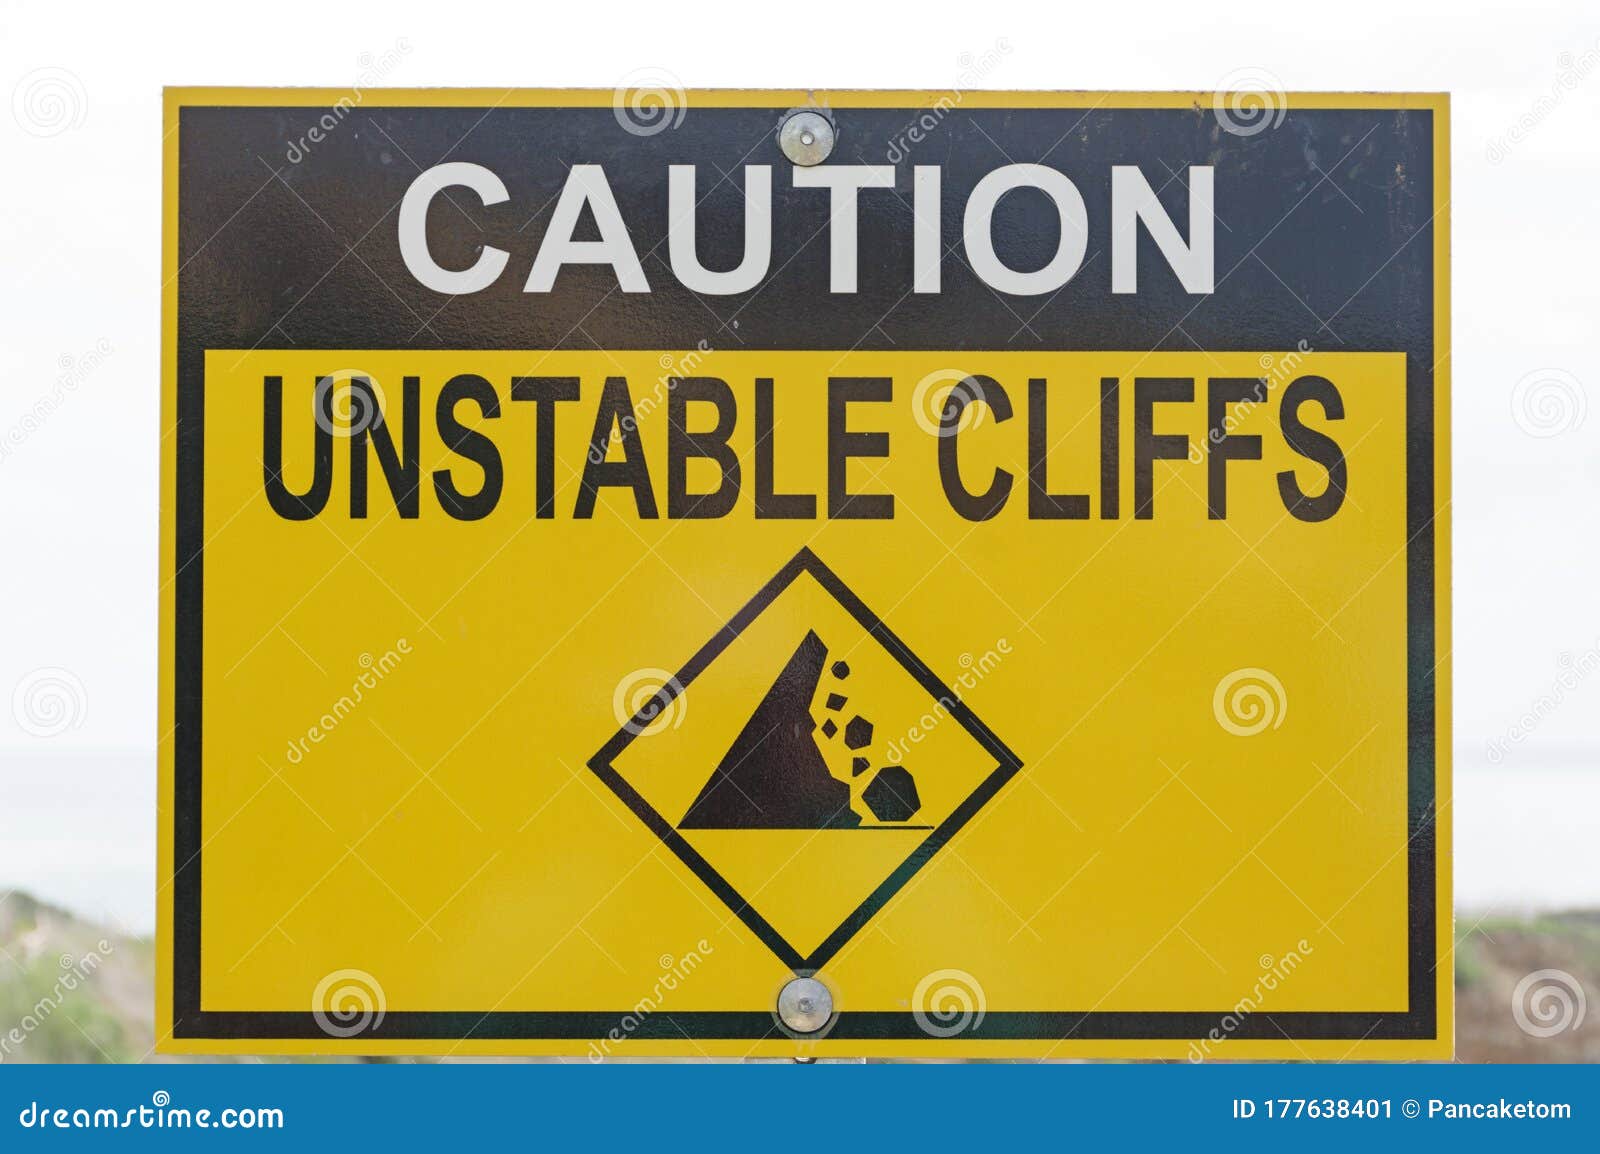 caution unstable cliffs sign